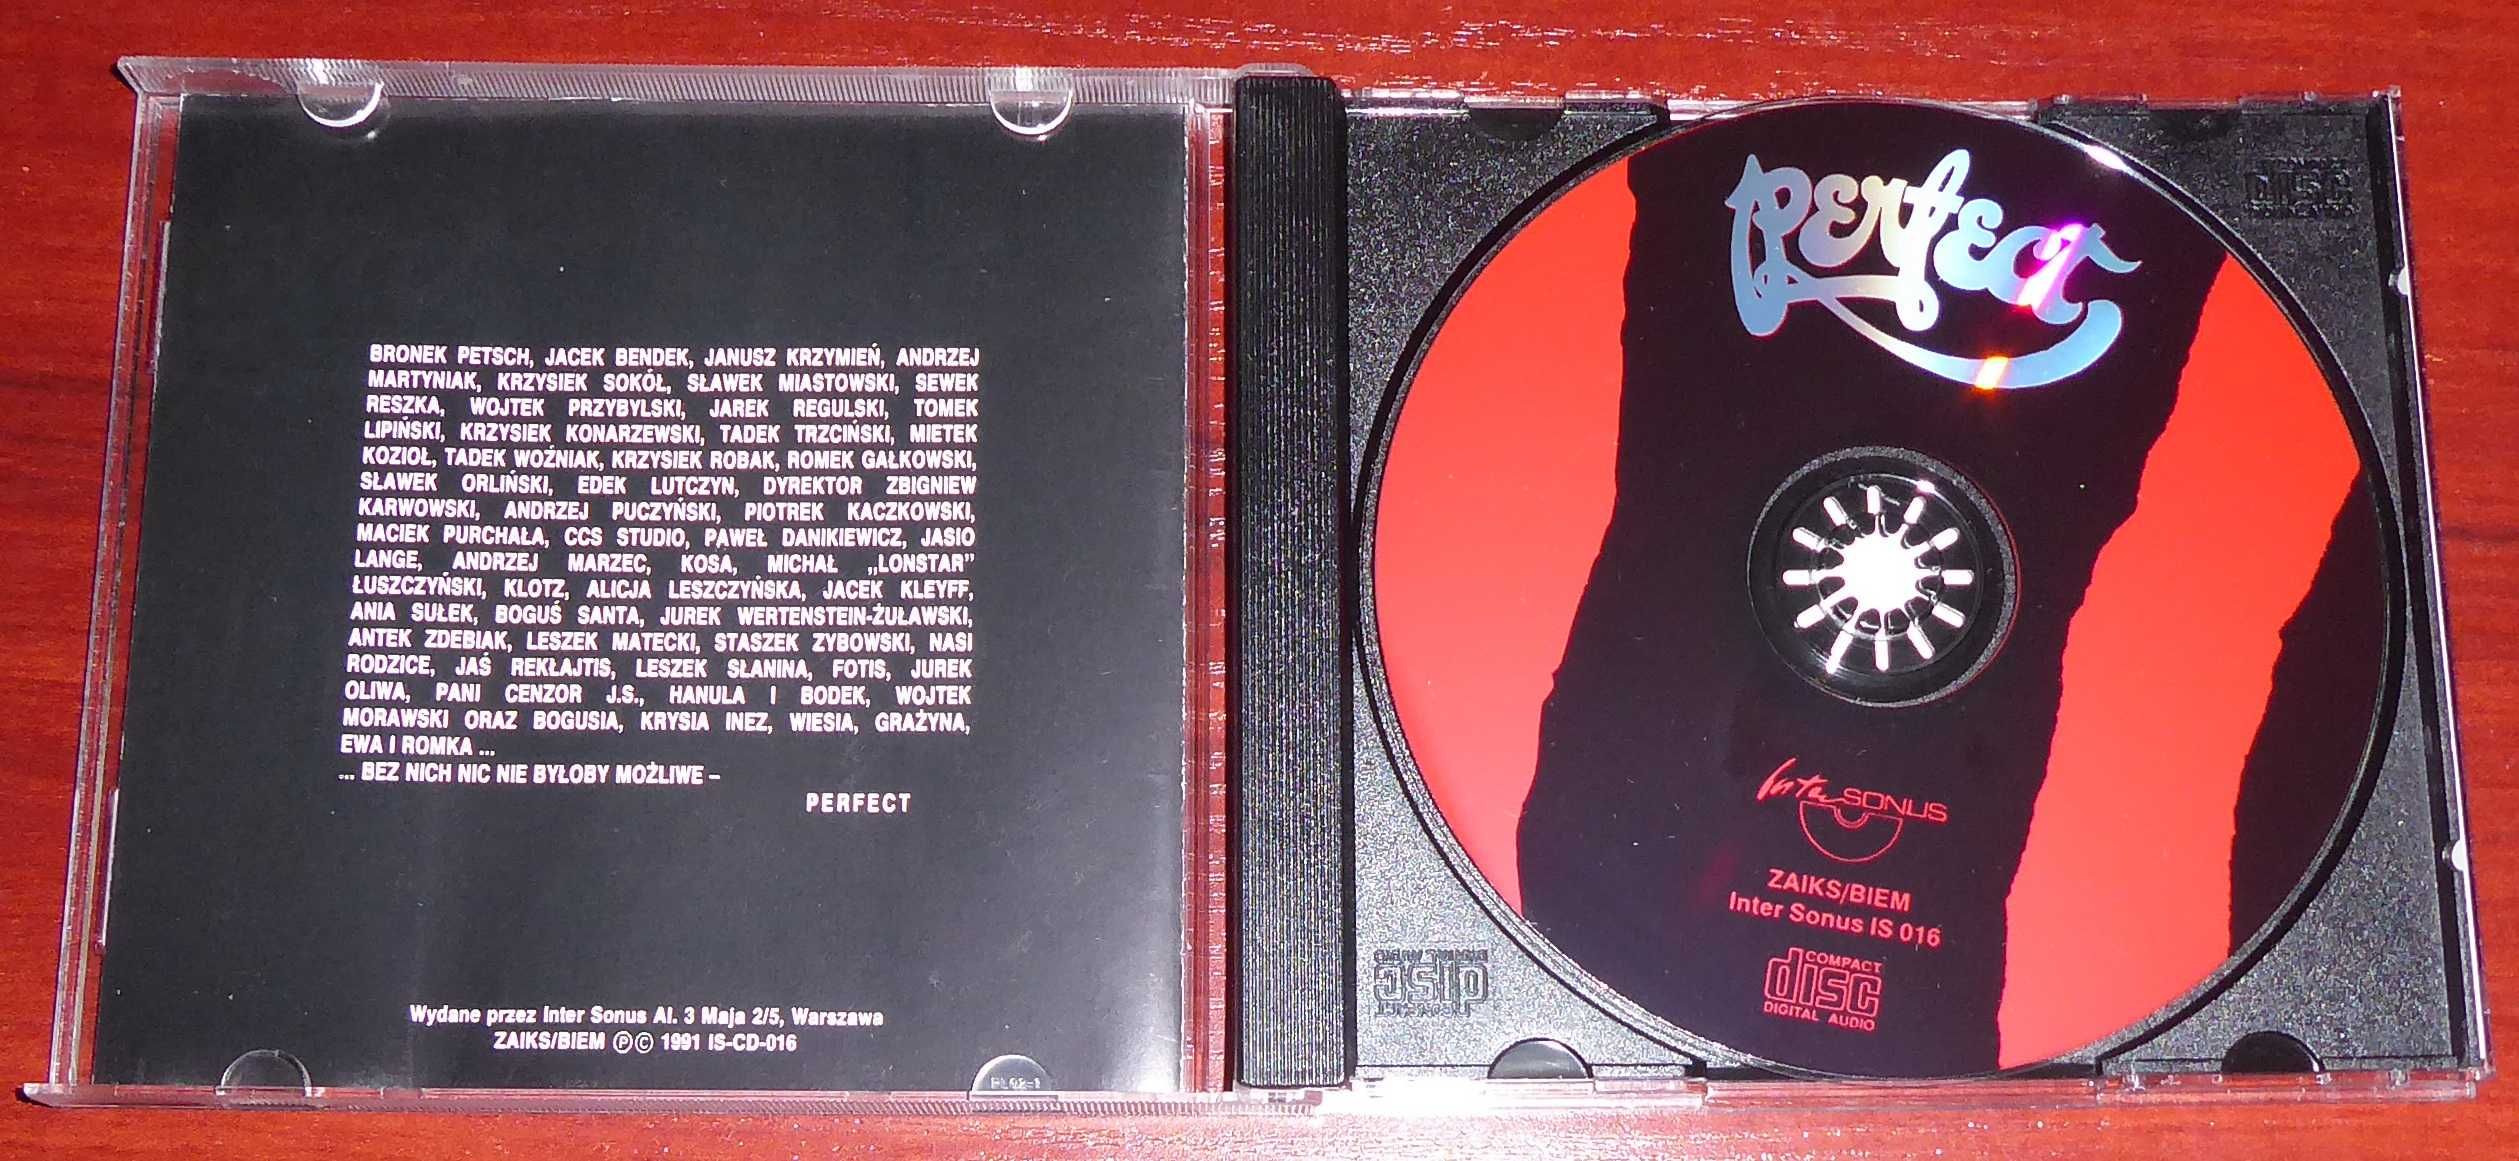 Perfect 1981 - 1989  CD VOL.1